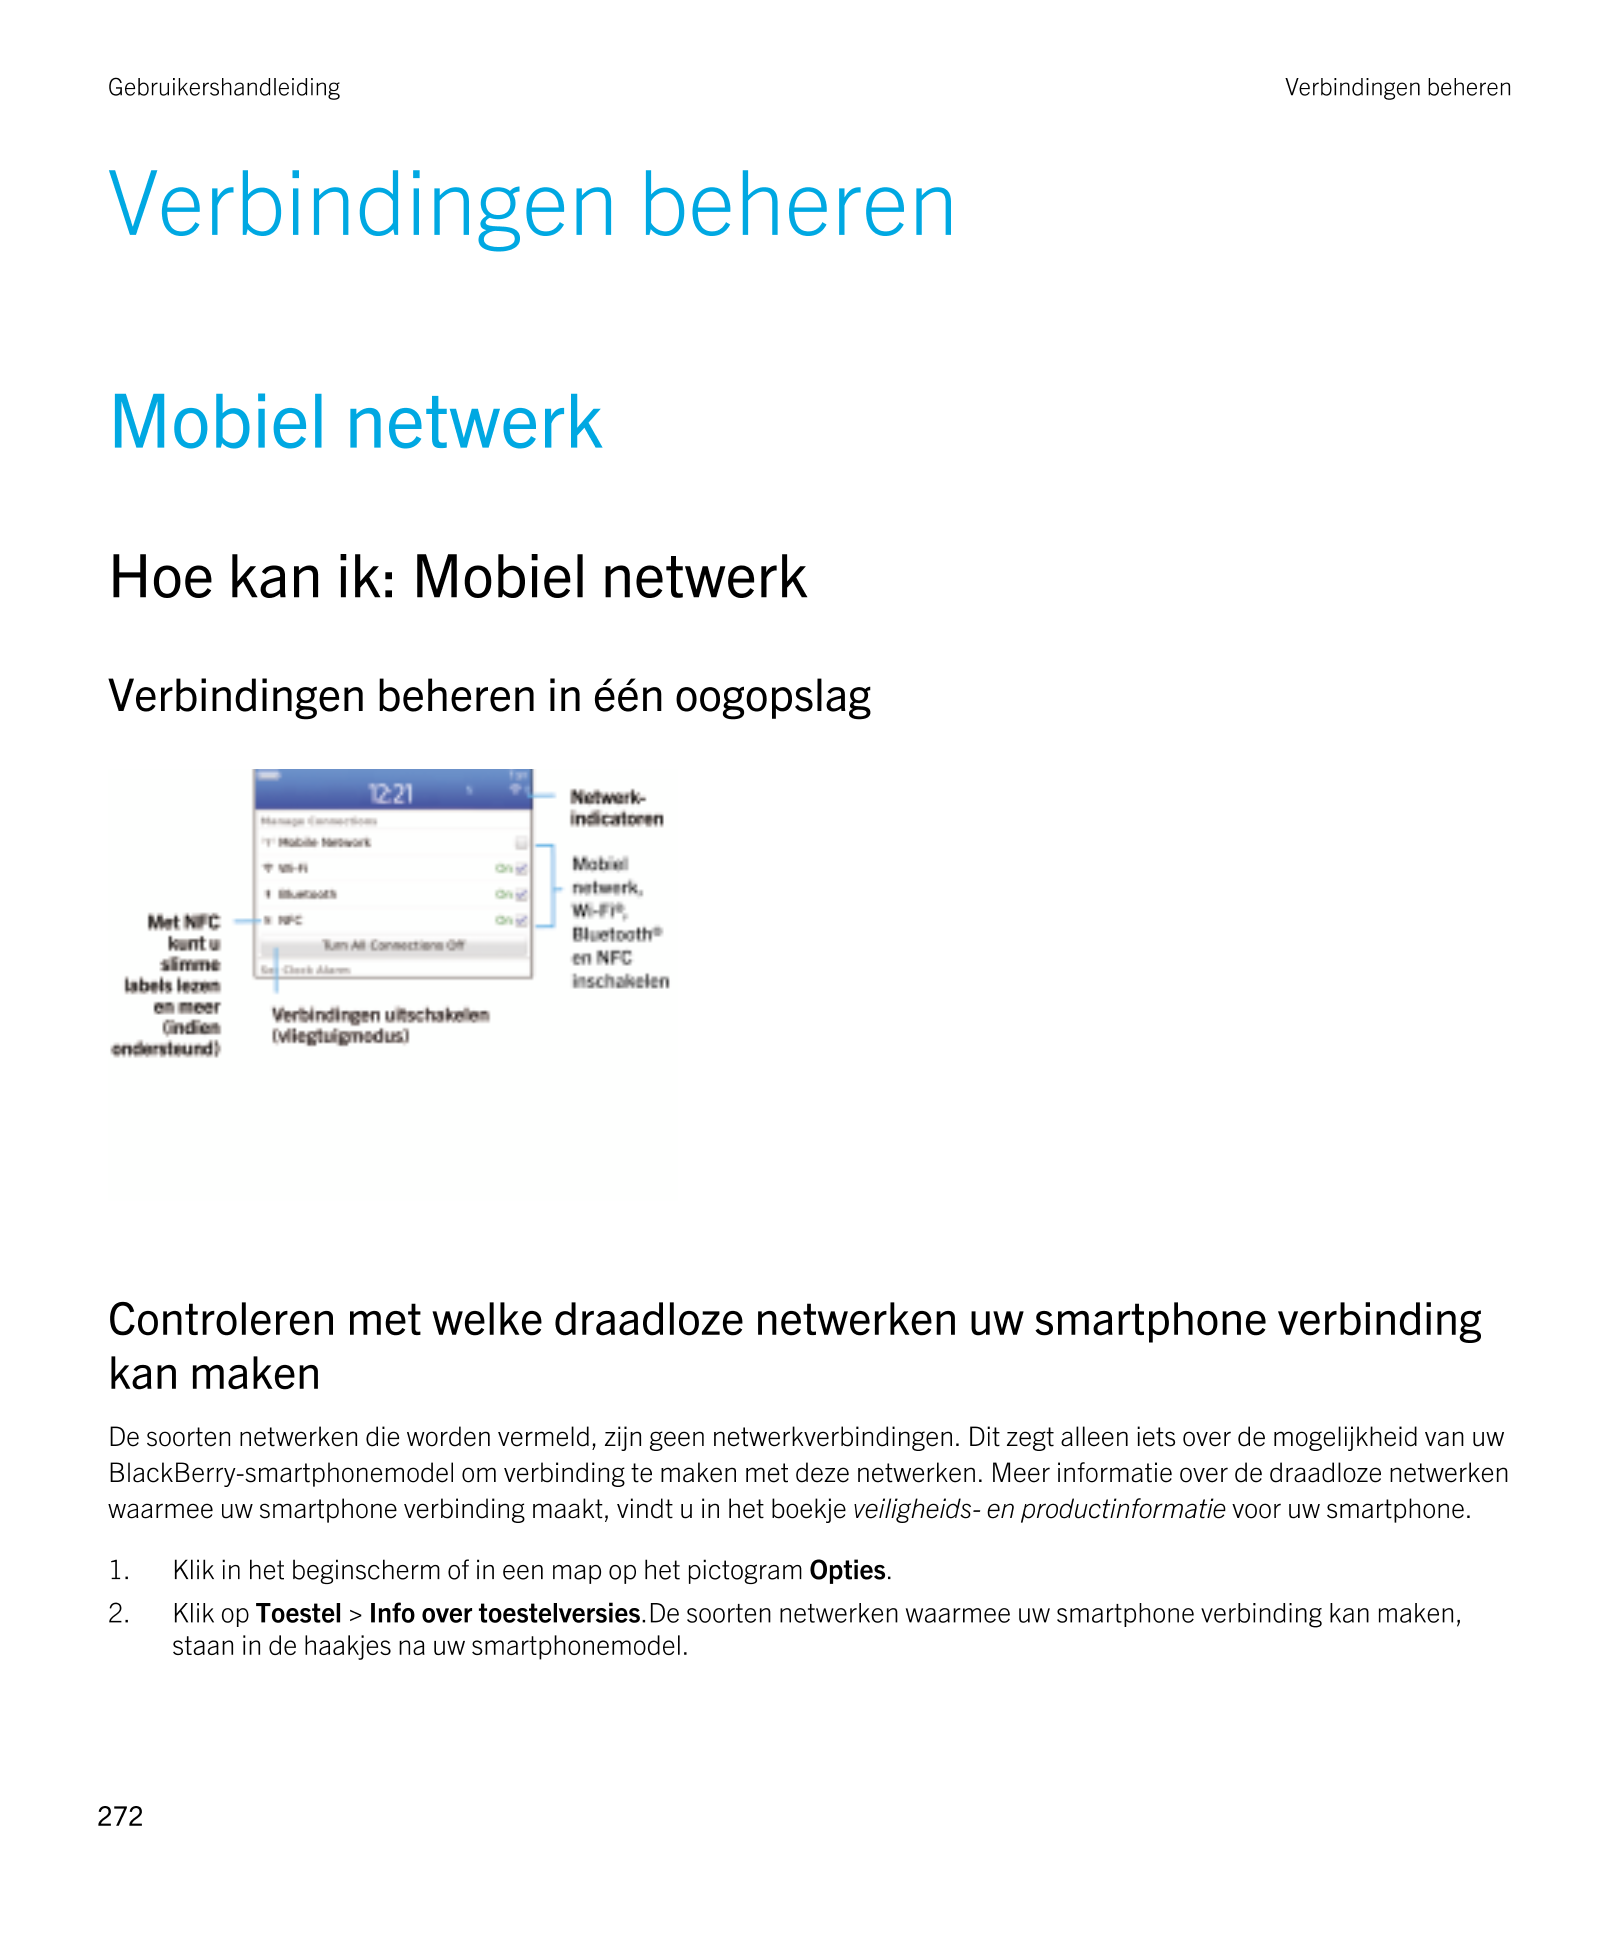 Gebruikershandleiding Verbindingen beheren
Verbindingen beheren
Mobiel netwerk
Hoe kan ik: Mobiel netwerk
Verbindingen beheren i